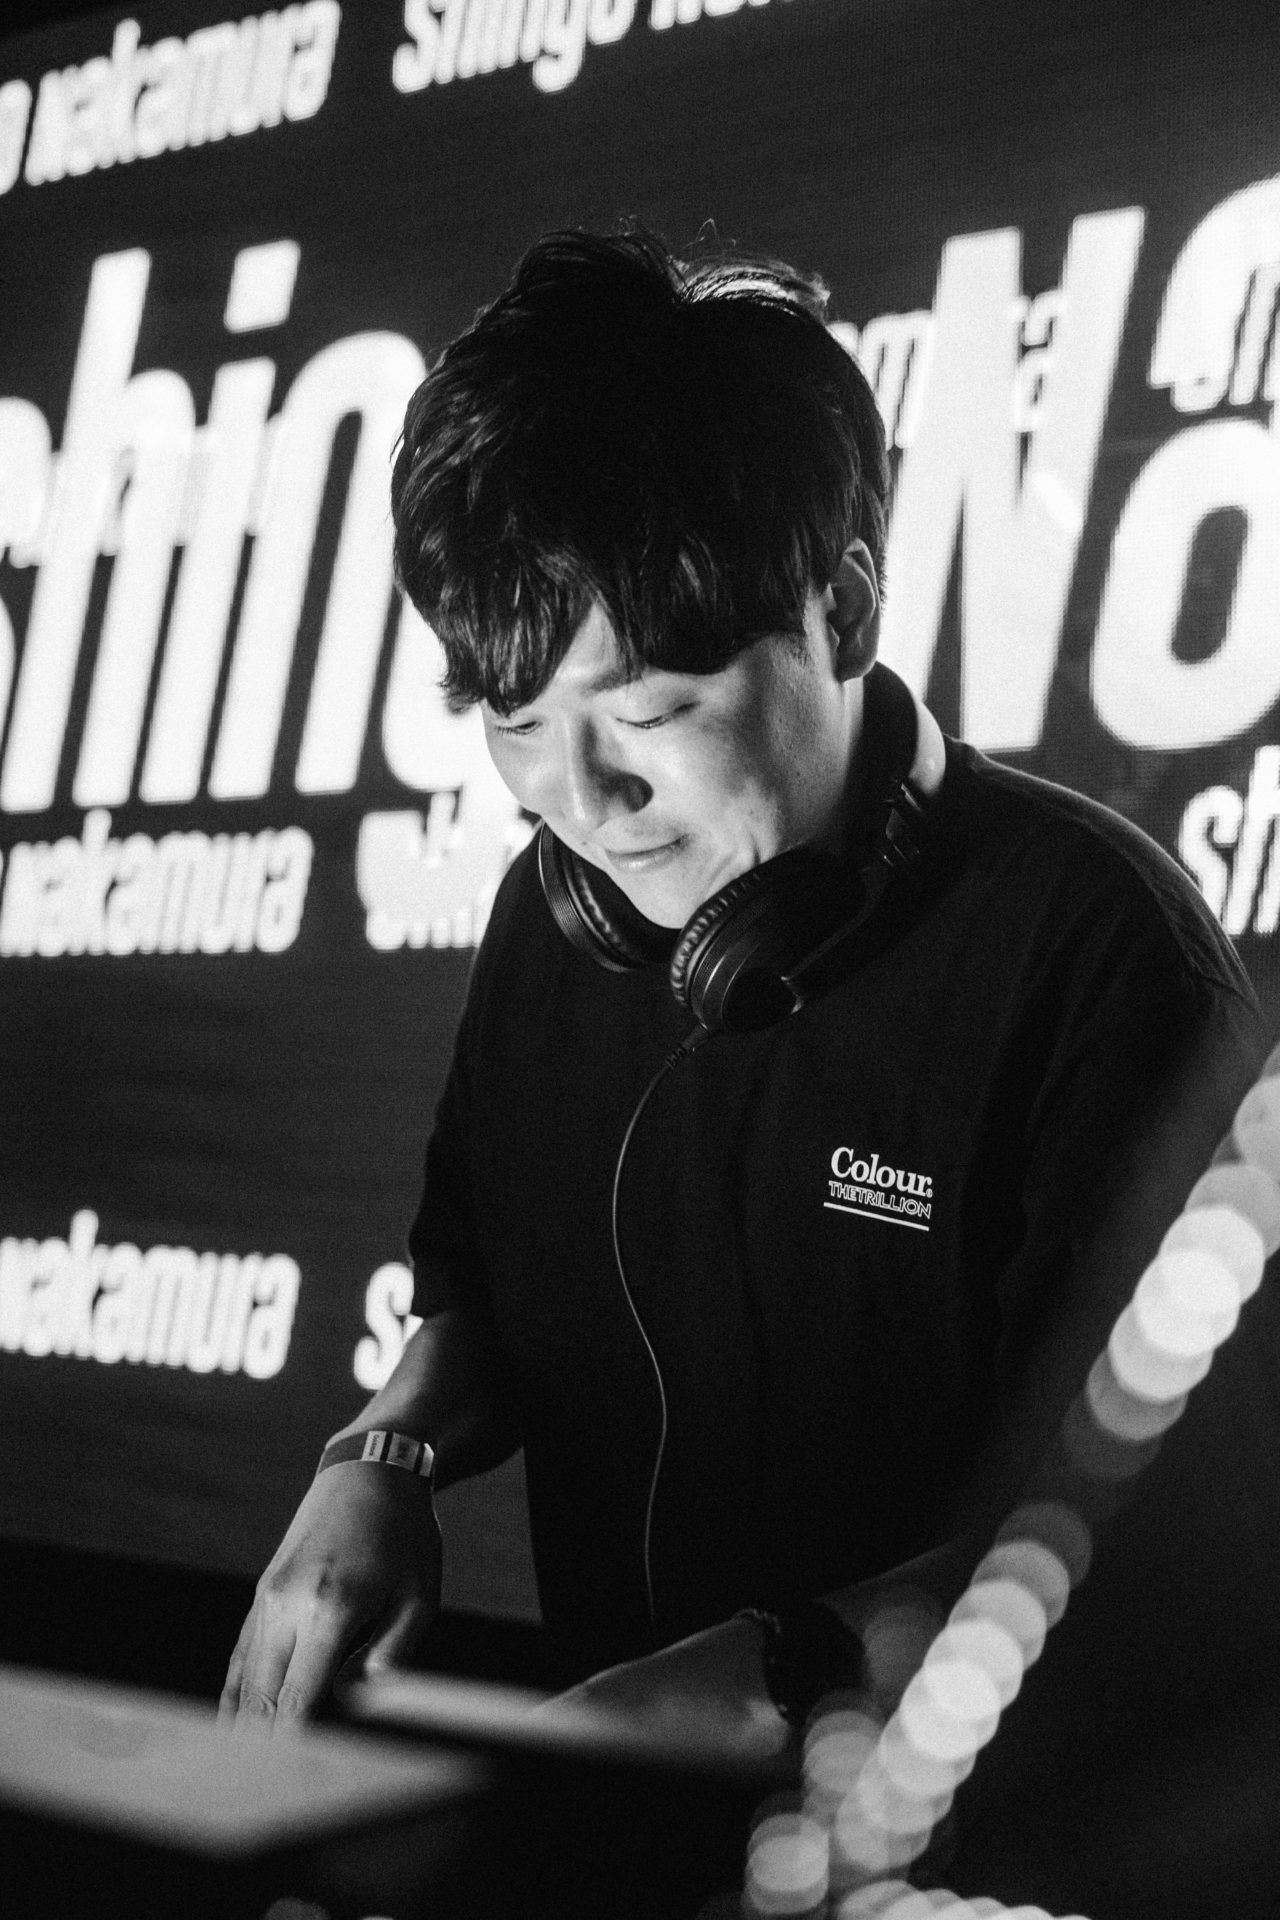 Shingo Nakamura performing at Ora nightclub for 700 episode showcase of monstercat silk